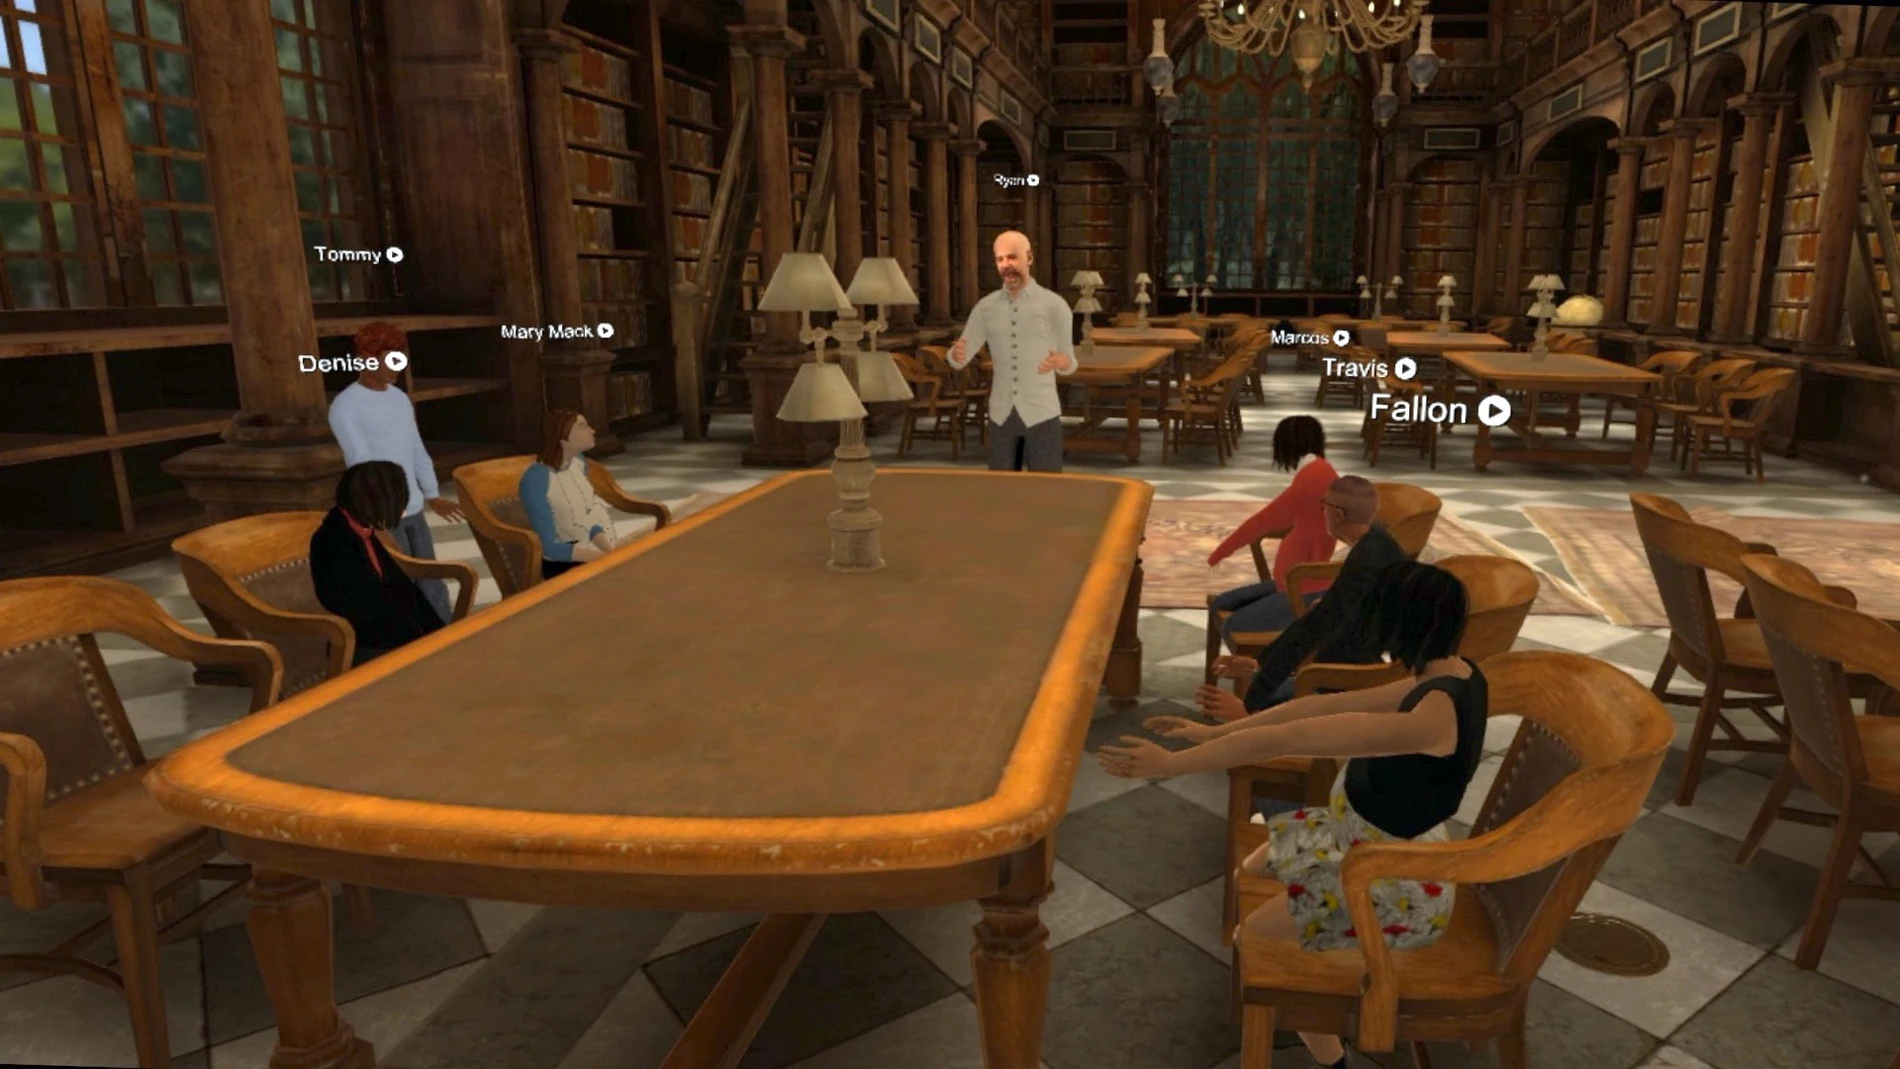 Fotografía cedida por Optima Classical Academy a EFE que muestra una de sus clases de realidad virtual 3D donde aparece un profesor mientras imparte su clase a unos alumnos en la Biblioteca de Oxford.